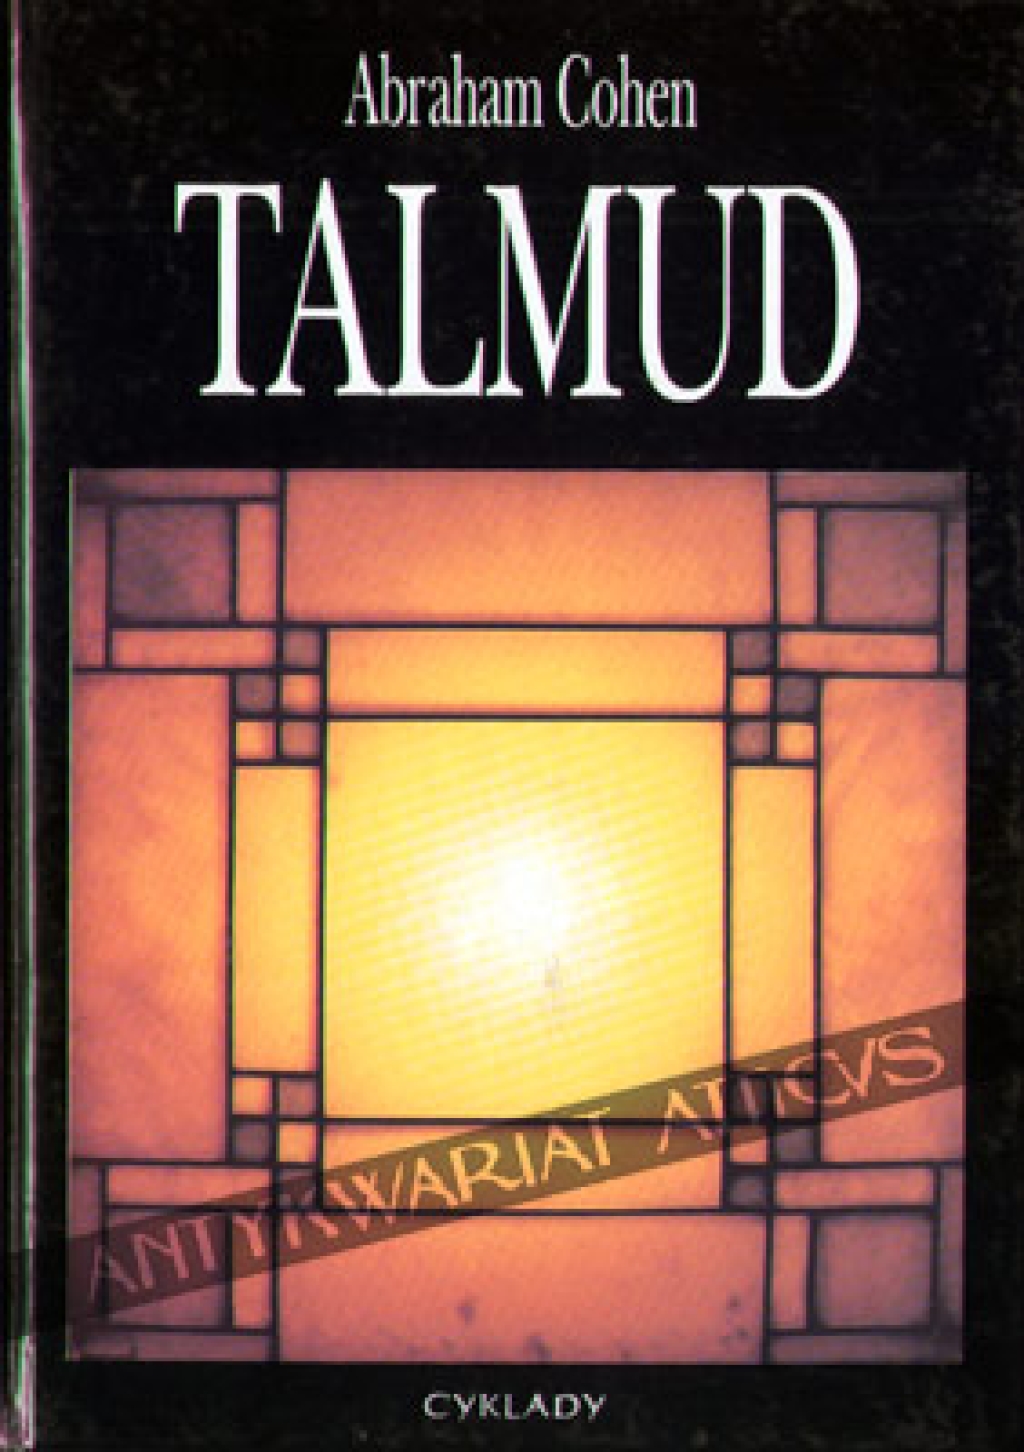 Talmud. Syntetyczny wykład na temat Talmudu i nauk rabinów dotyczących religii, etyki i prawodawstwa